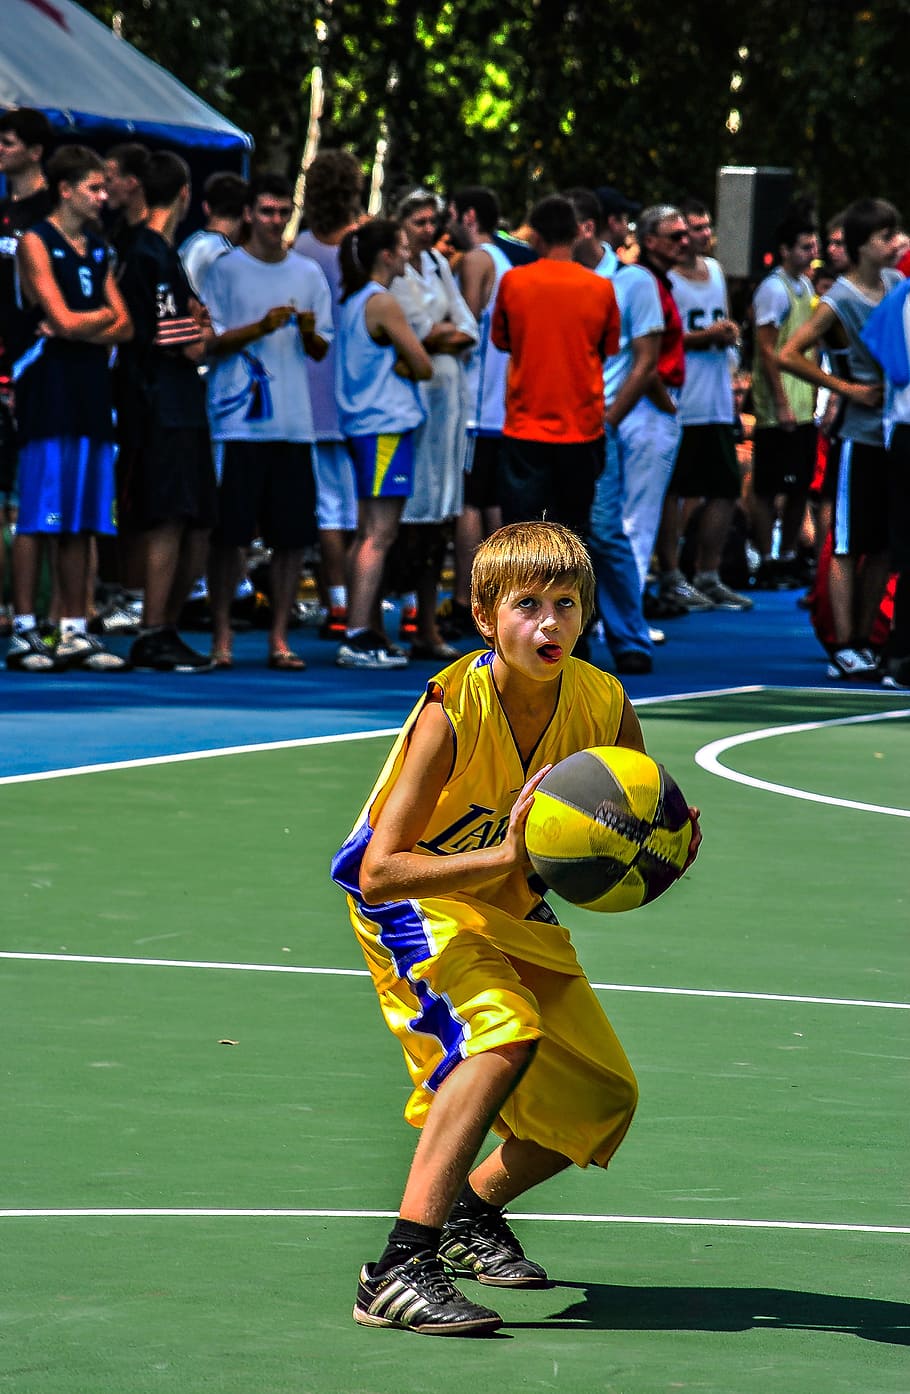 baloncesto, niño, pelota, juego, amarillo, deporte, personas reales, grupo de personas, multitud, gran grupo de personas